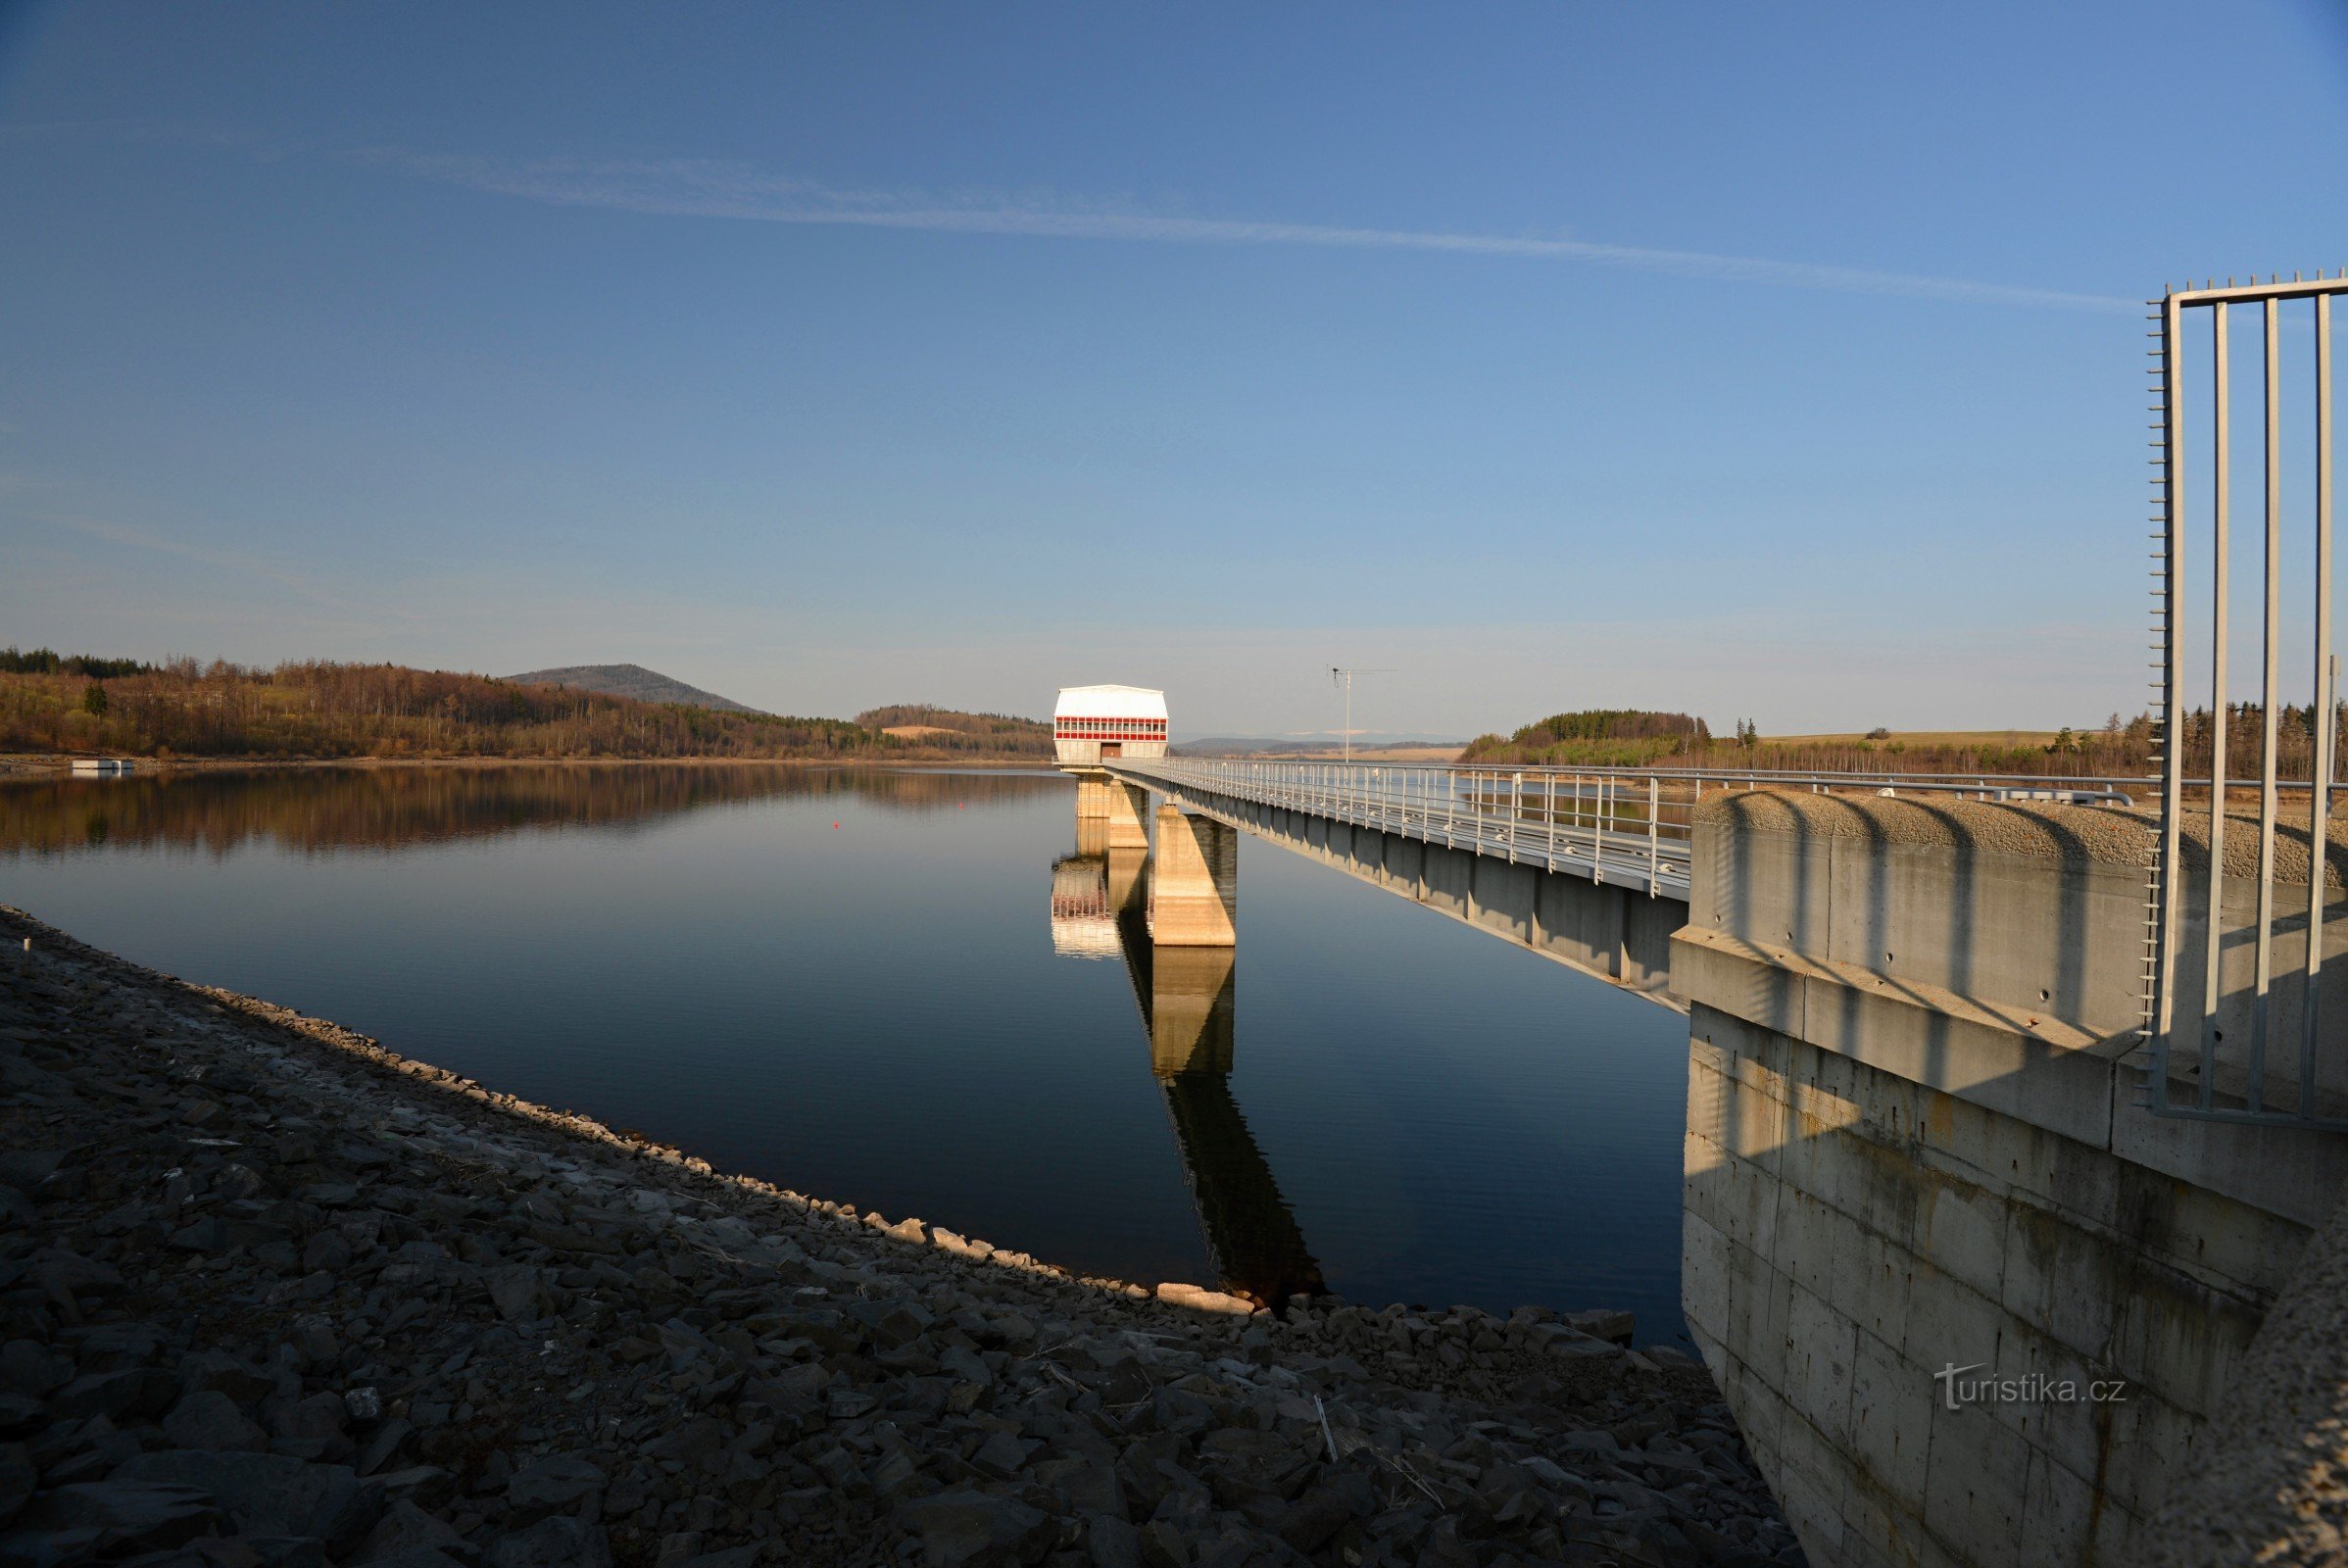 Slezská Harta Dam